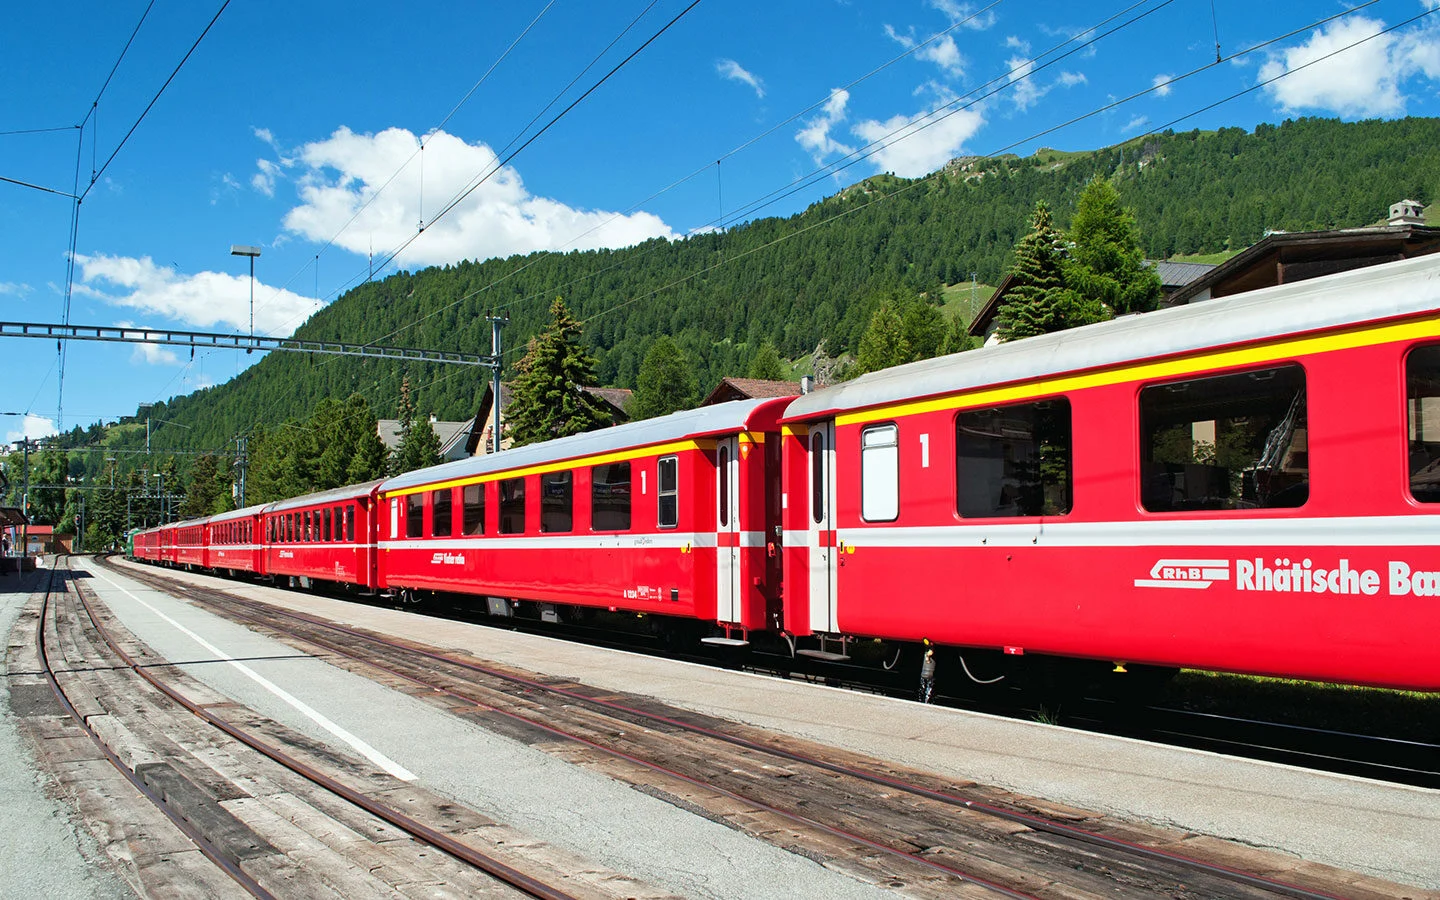 Local Rhätische Bahn trains near St Moritz